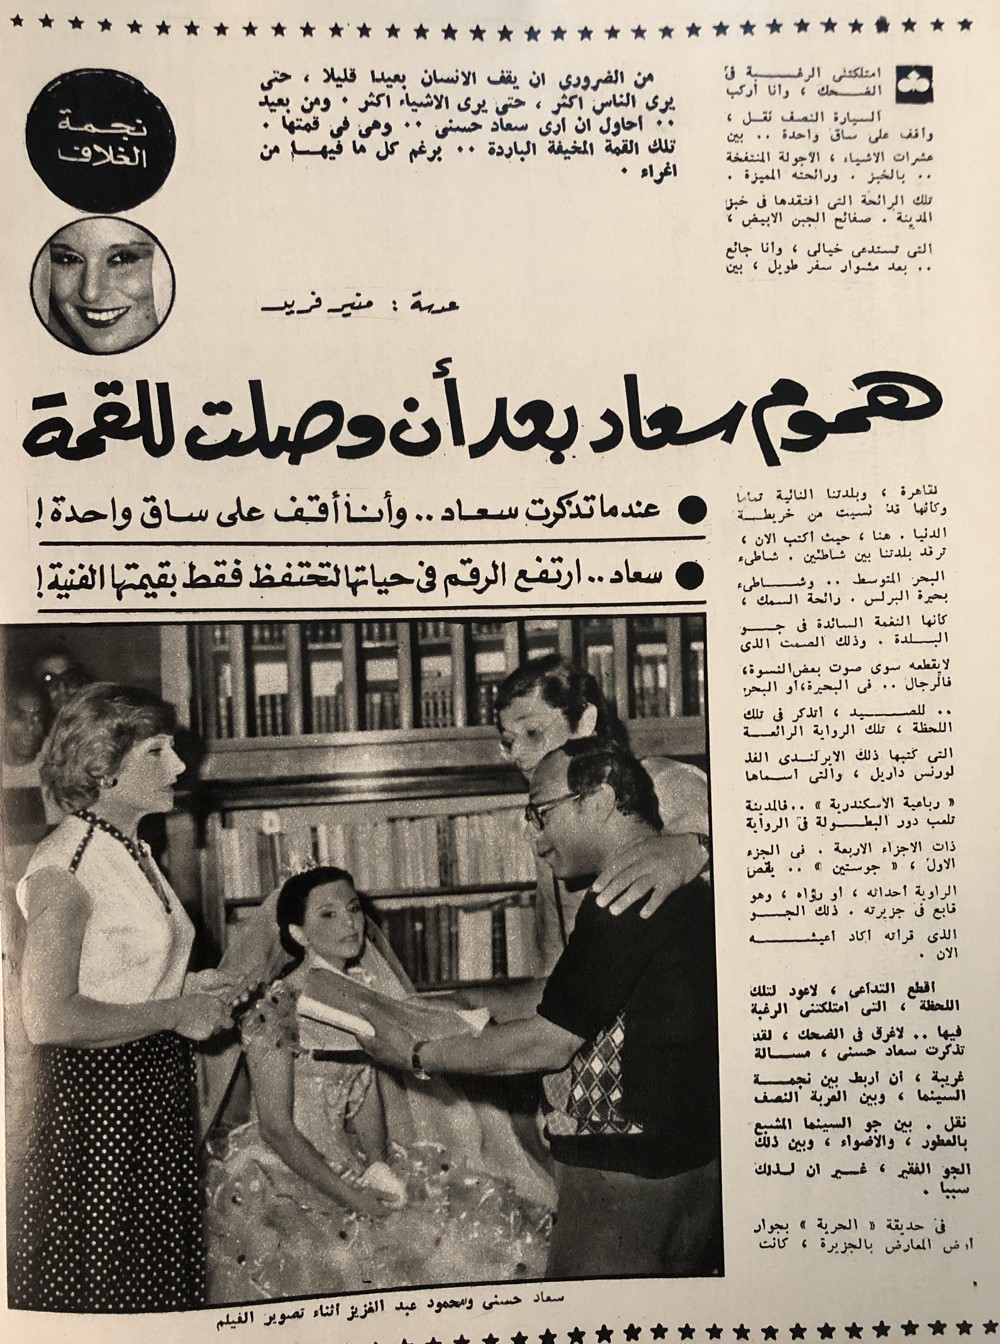 مقال صحفي : هموم سعاد بعد أن وصلت للقمة 1978 م 157